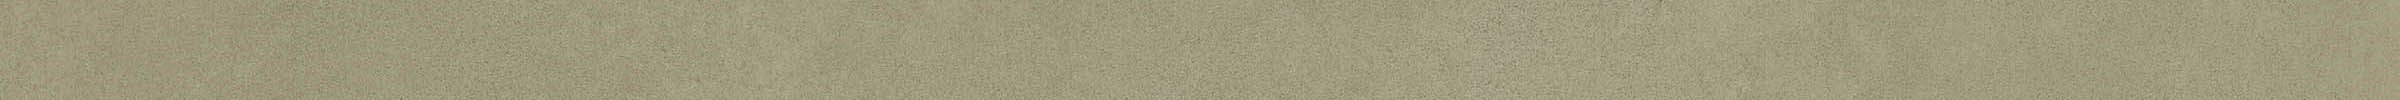 Imola Retina Verde Natural Flat Matt Verde 183691 glatt matt natur 5x120cm rektifiziert 6,5mm